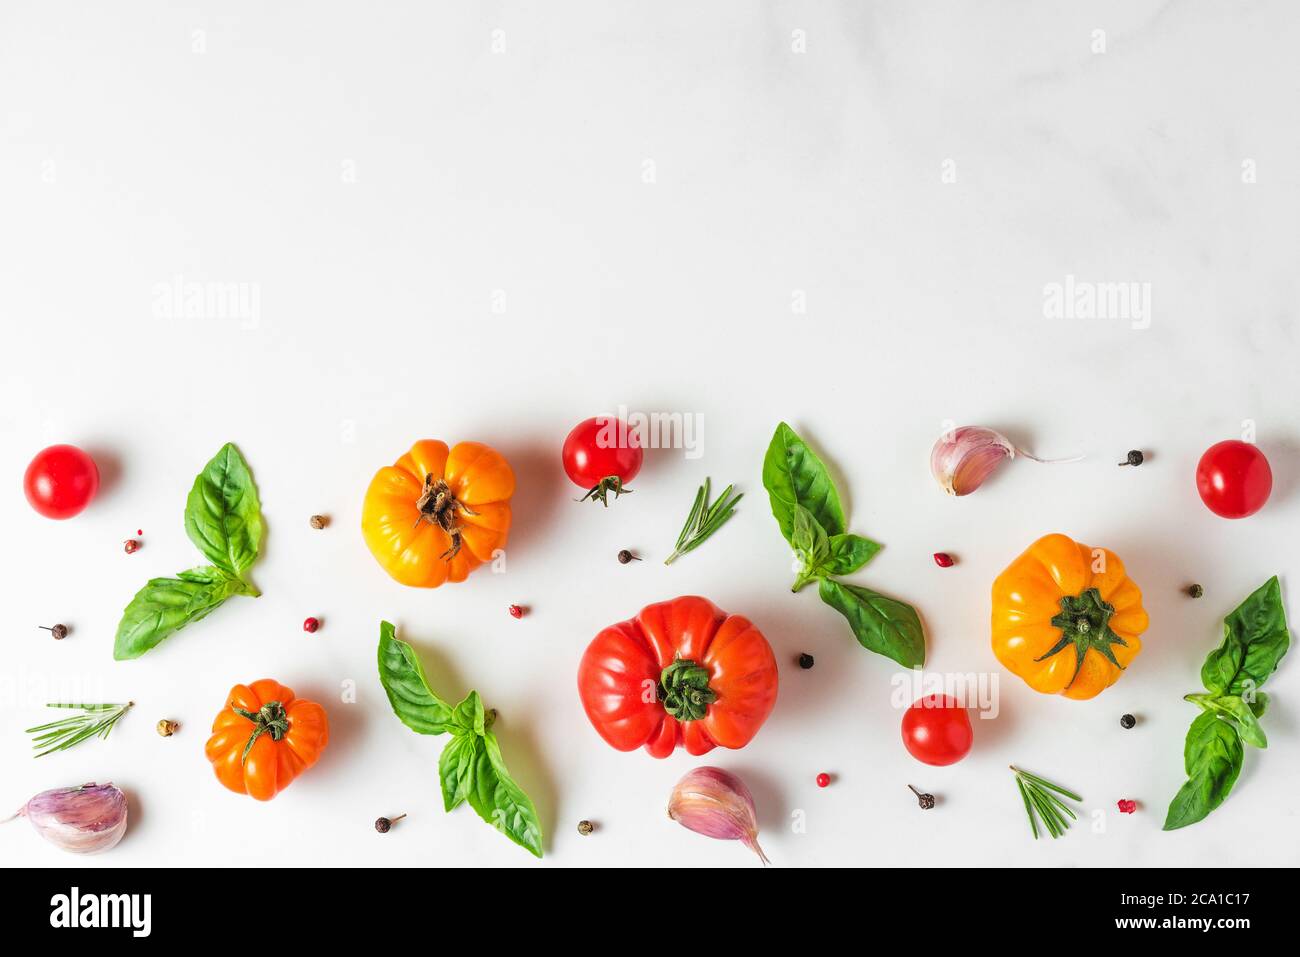 Lebensmittelzusammensetzung aus Bio-Gemüse. Tomaten, Pfeffer, Knoblauch und Basilikum auf weißem Hintergrund. italienische Küche Kochkonzept. Draufsicht mit CO Stockfoto